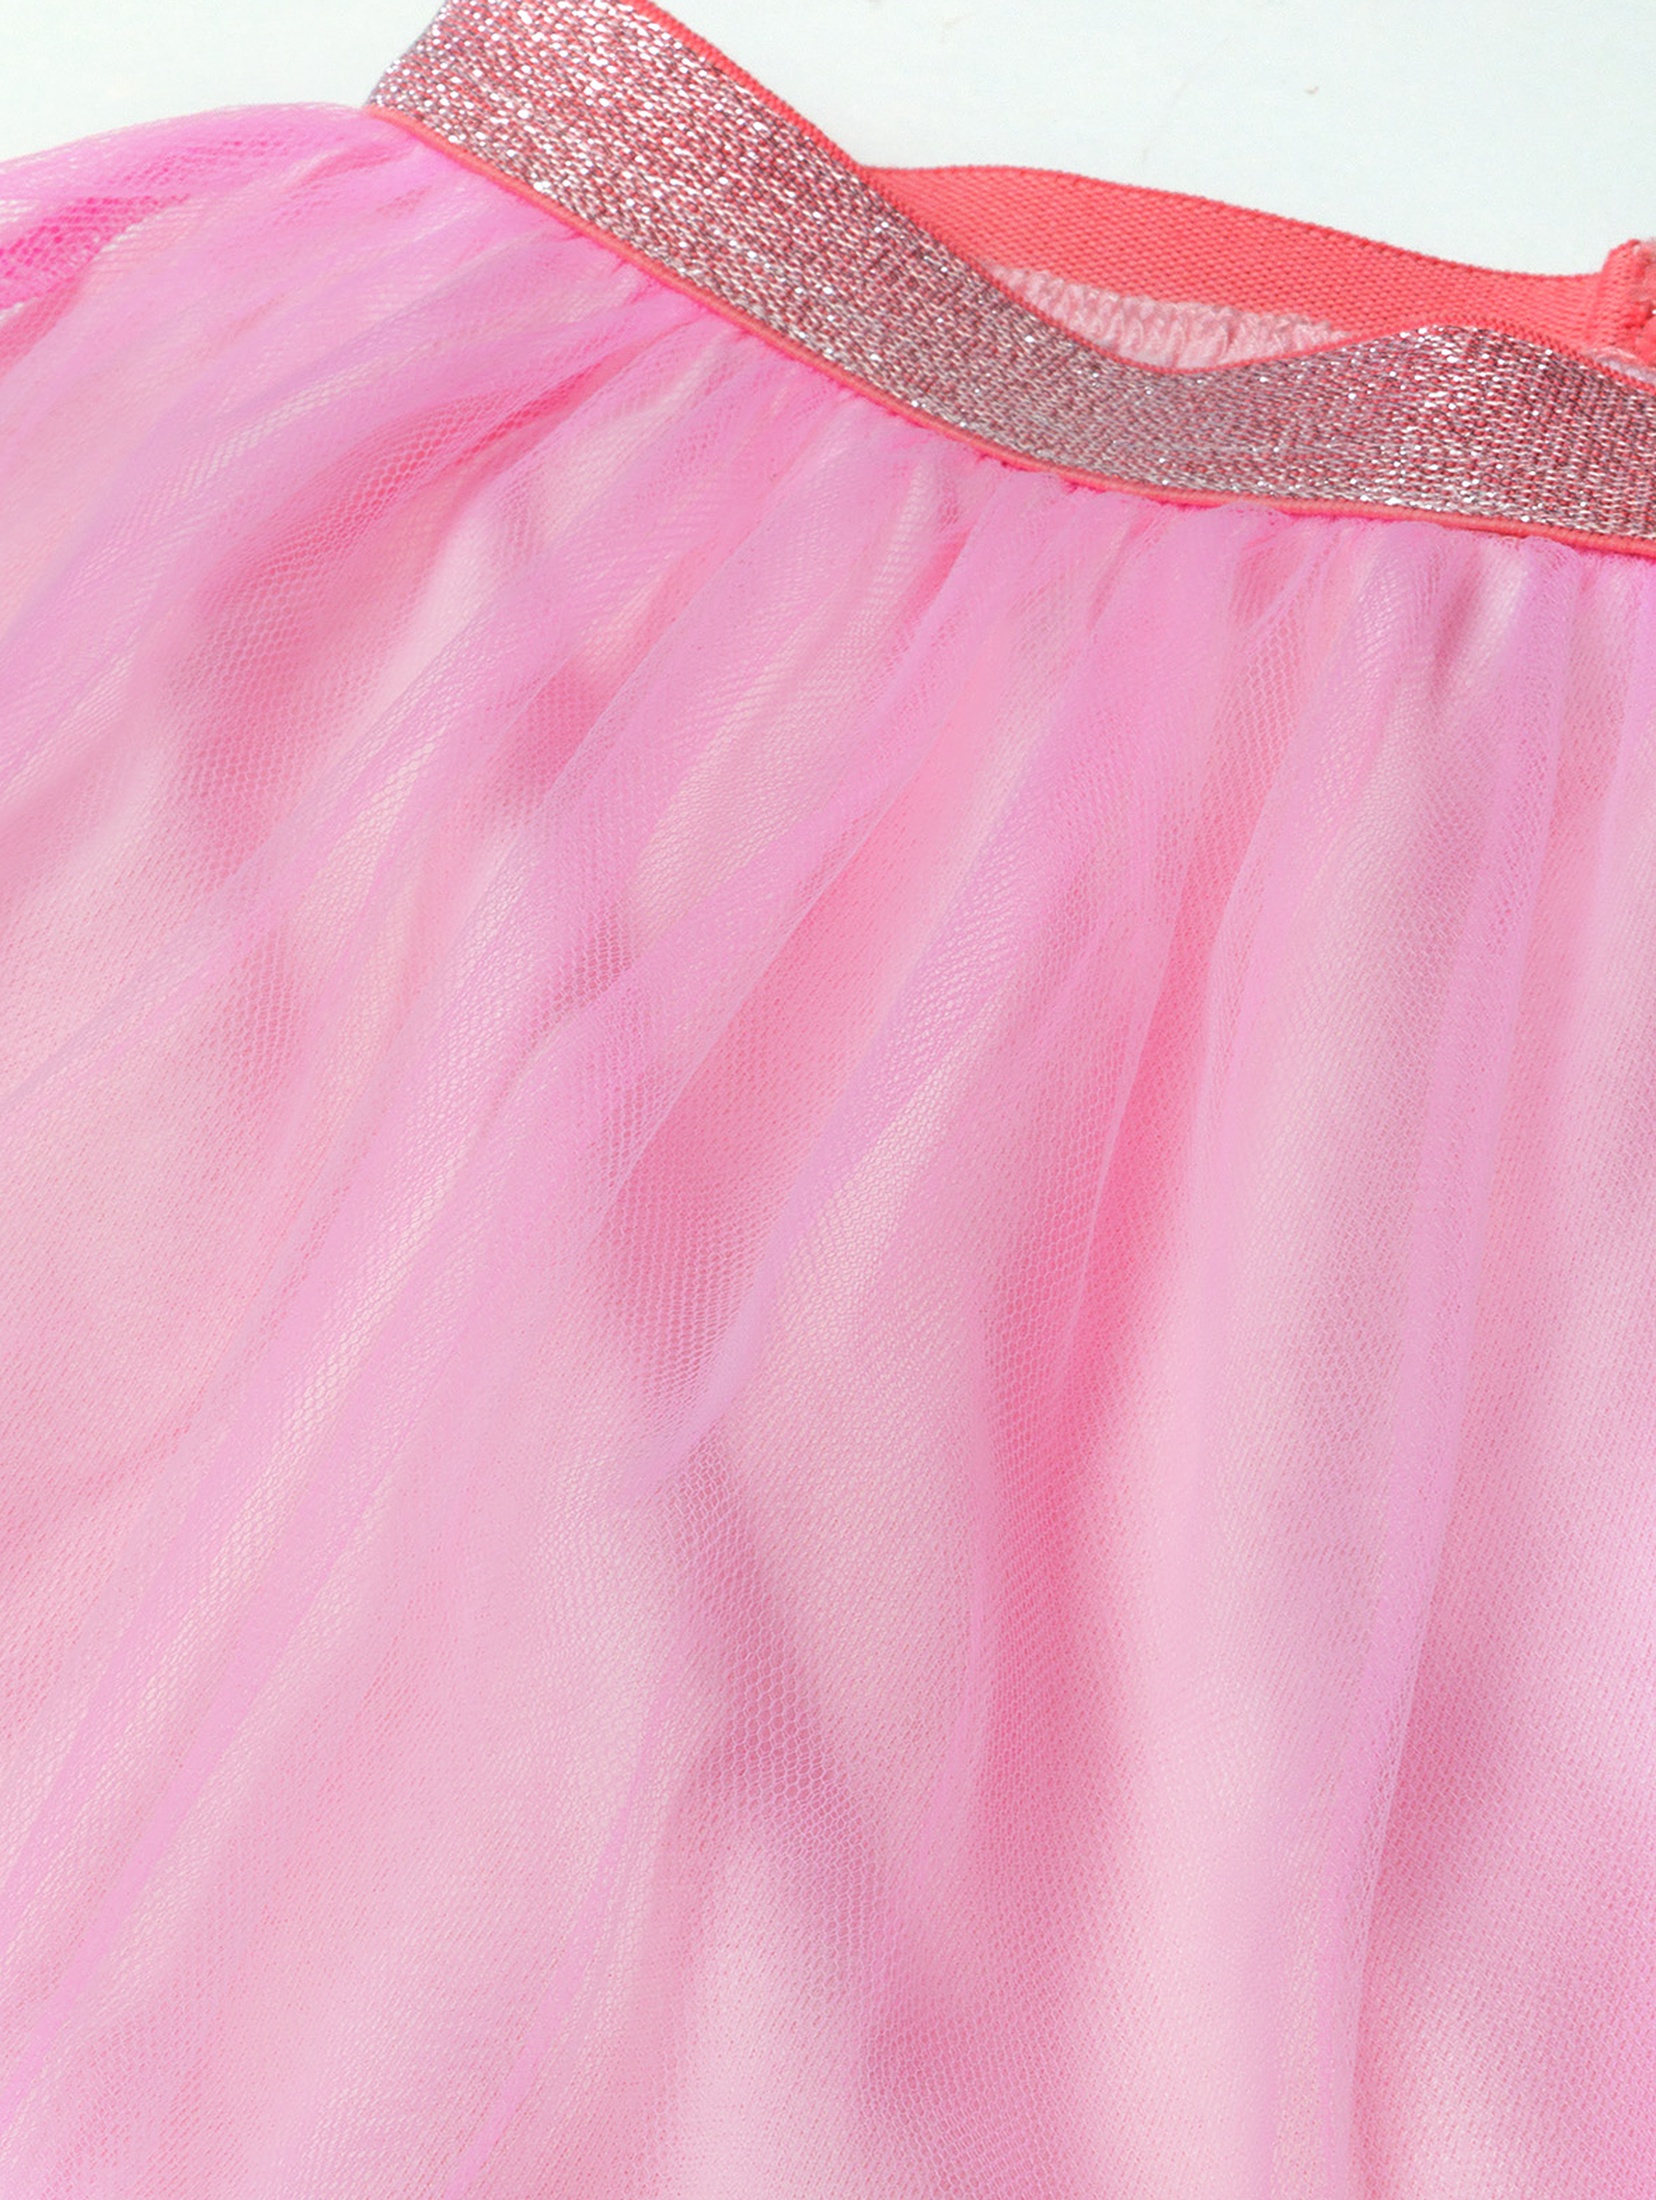 Różowa tiulowa spódnica dla dziewczynki - 5.10.15.